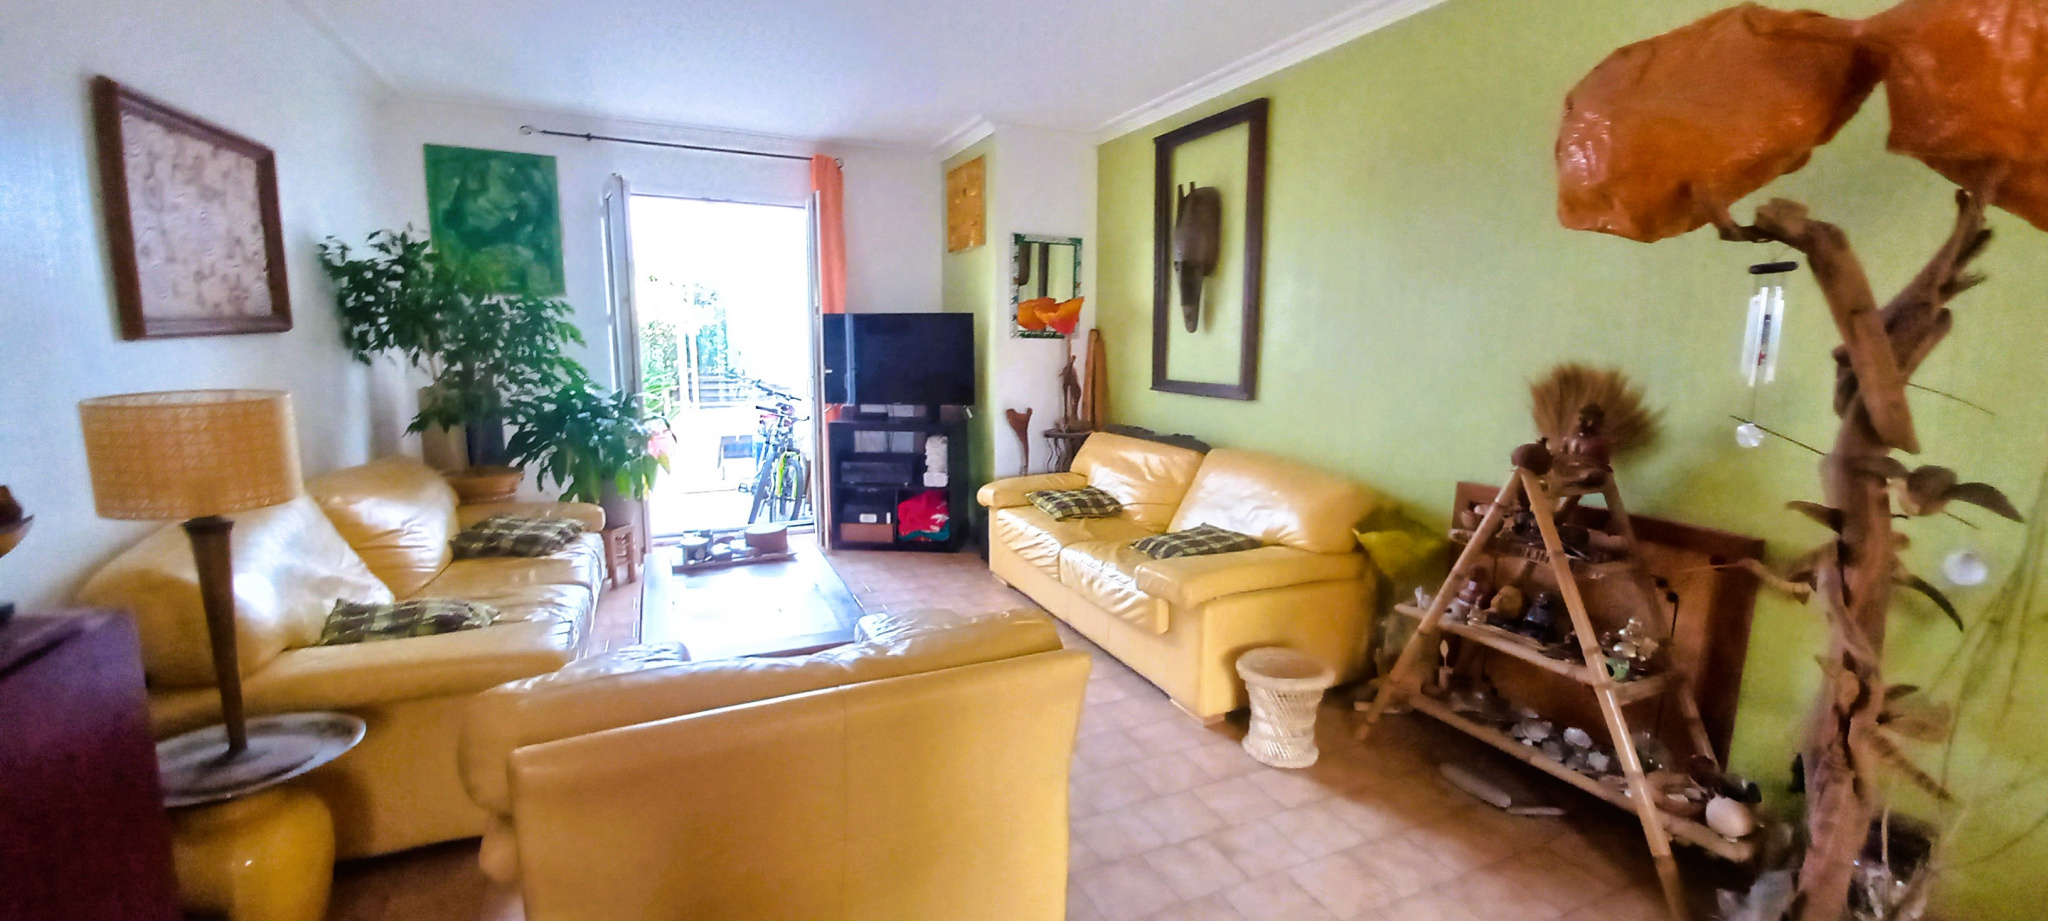 À vendre maison/villa de 85m2 à argelès-sur-mer (66700) - Photo 4'